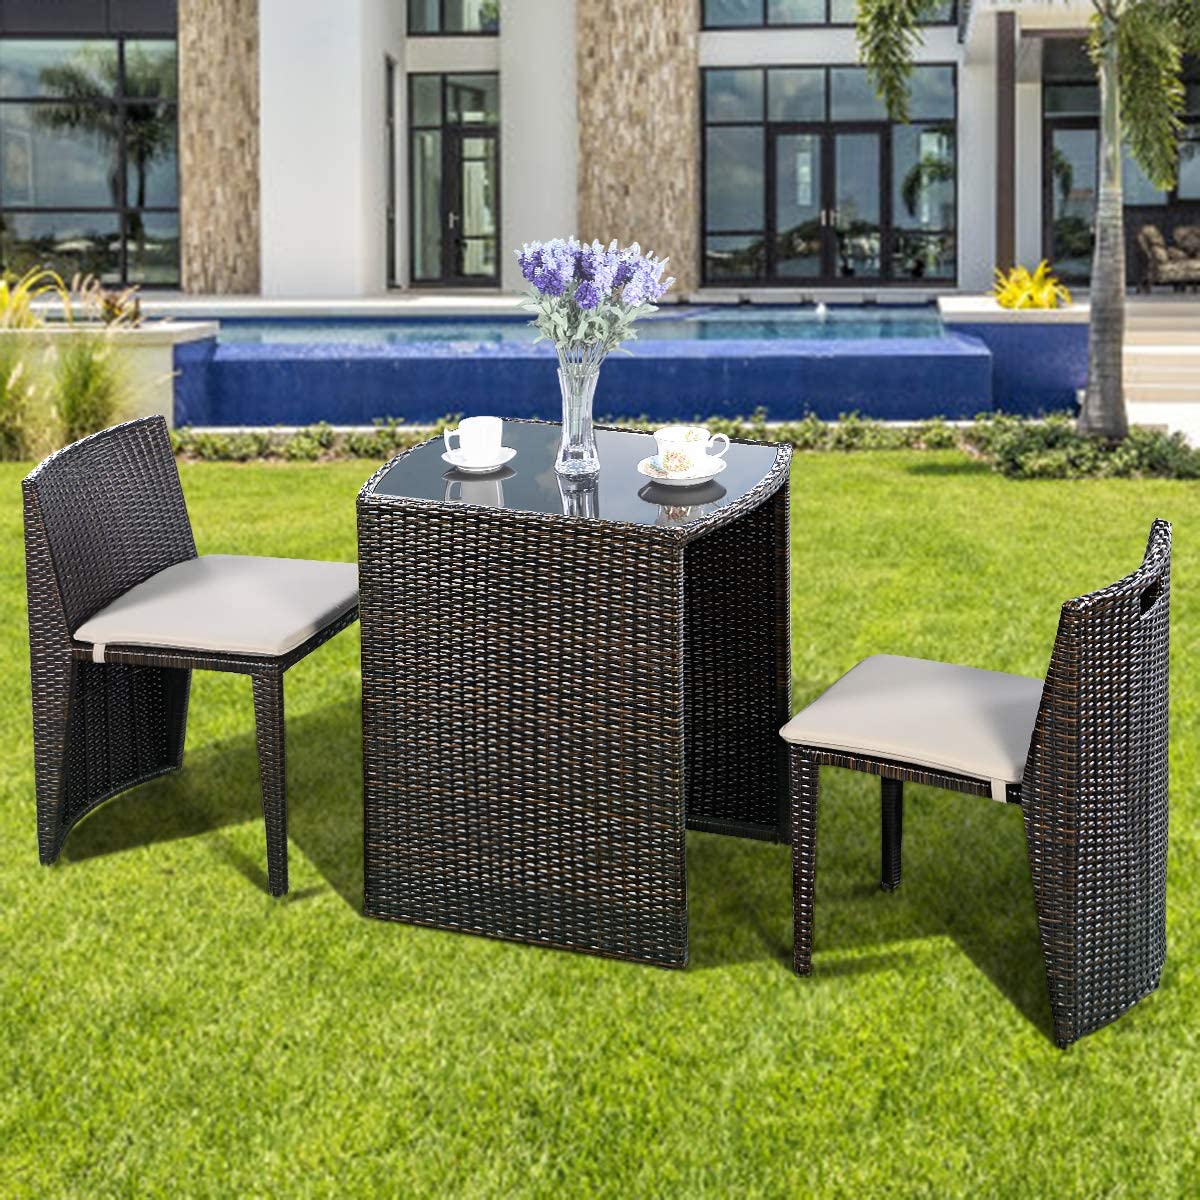 garden furniture ireland 2 seater bistro dining set